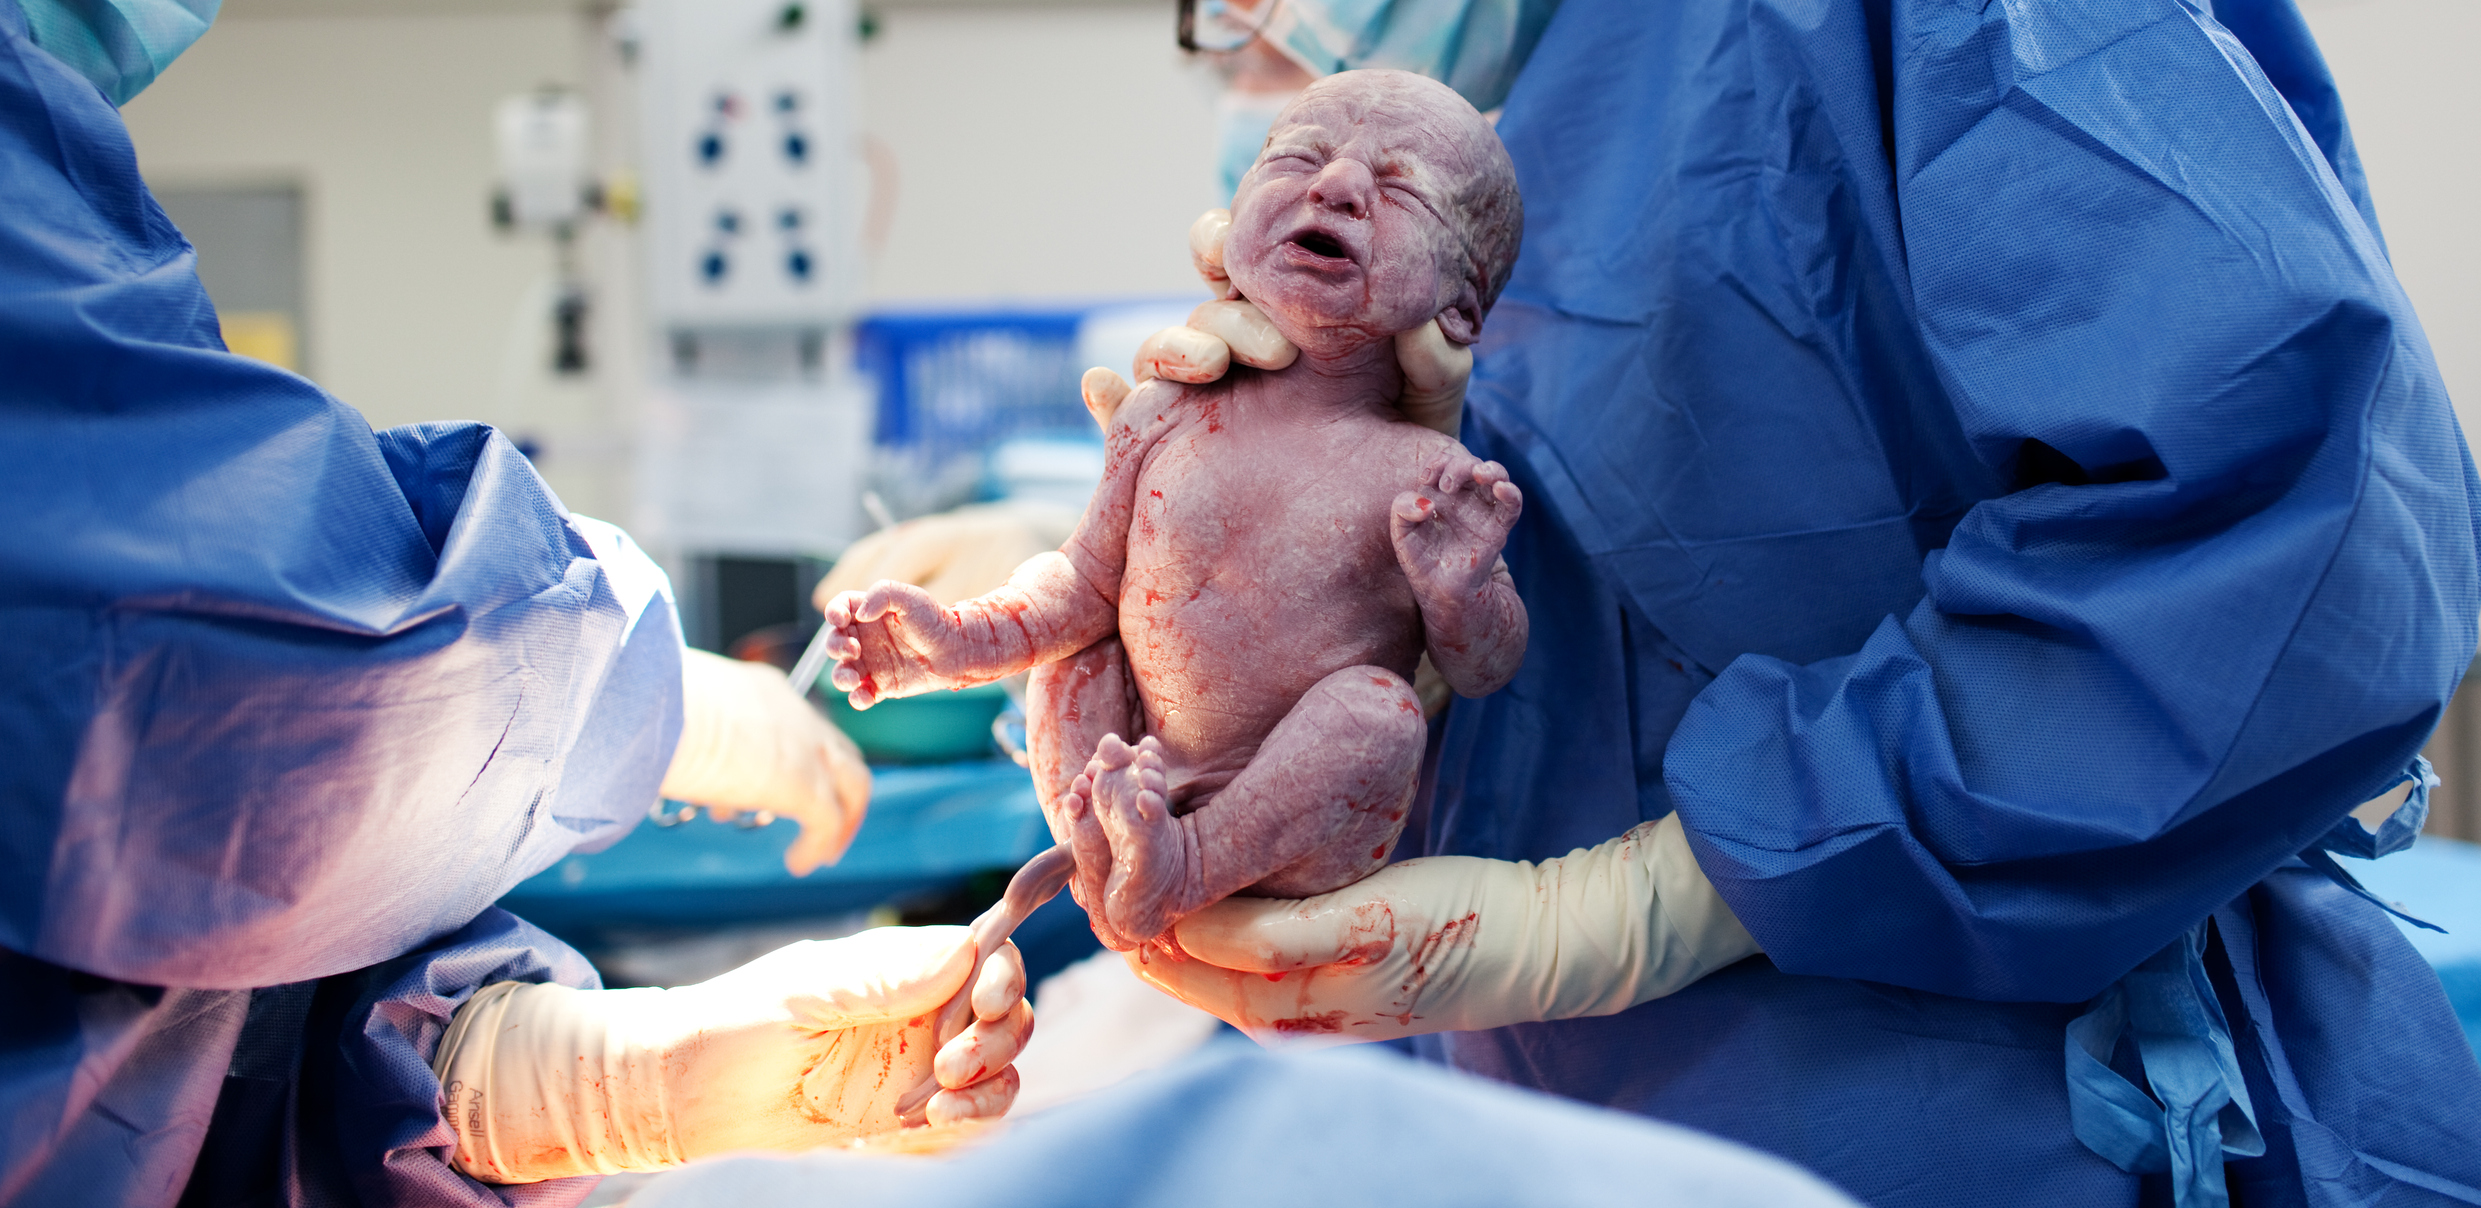 Neugeborenes kurz nach der Geburt.